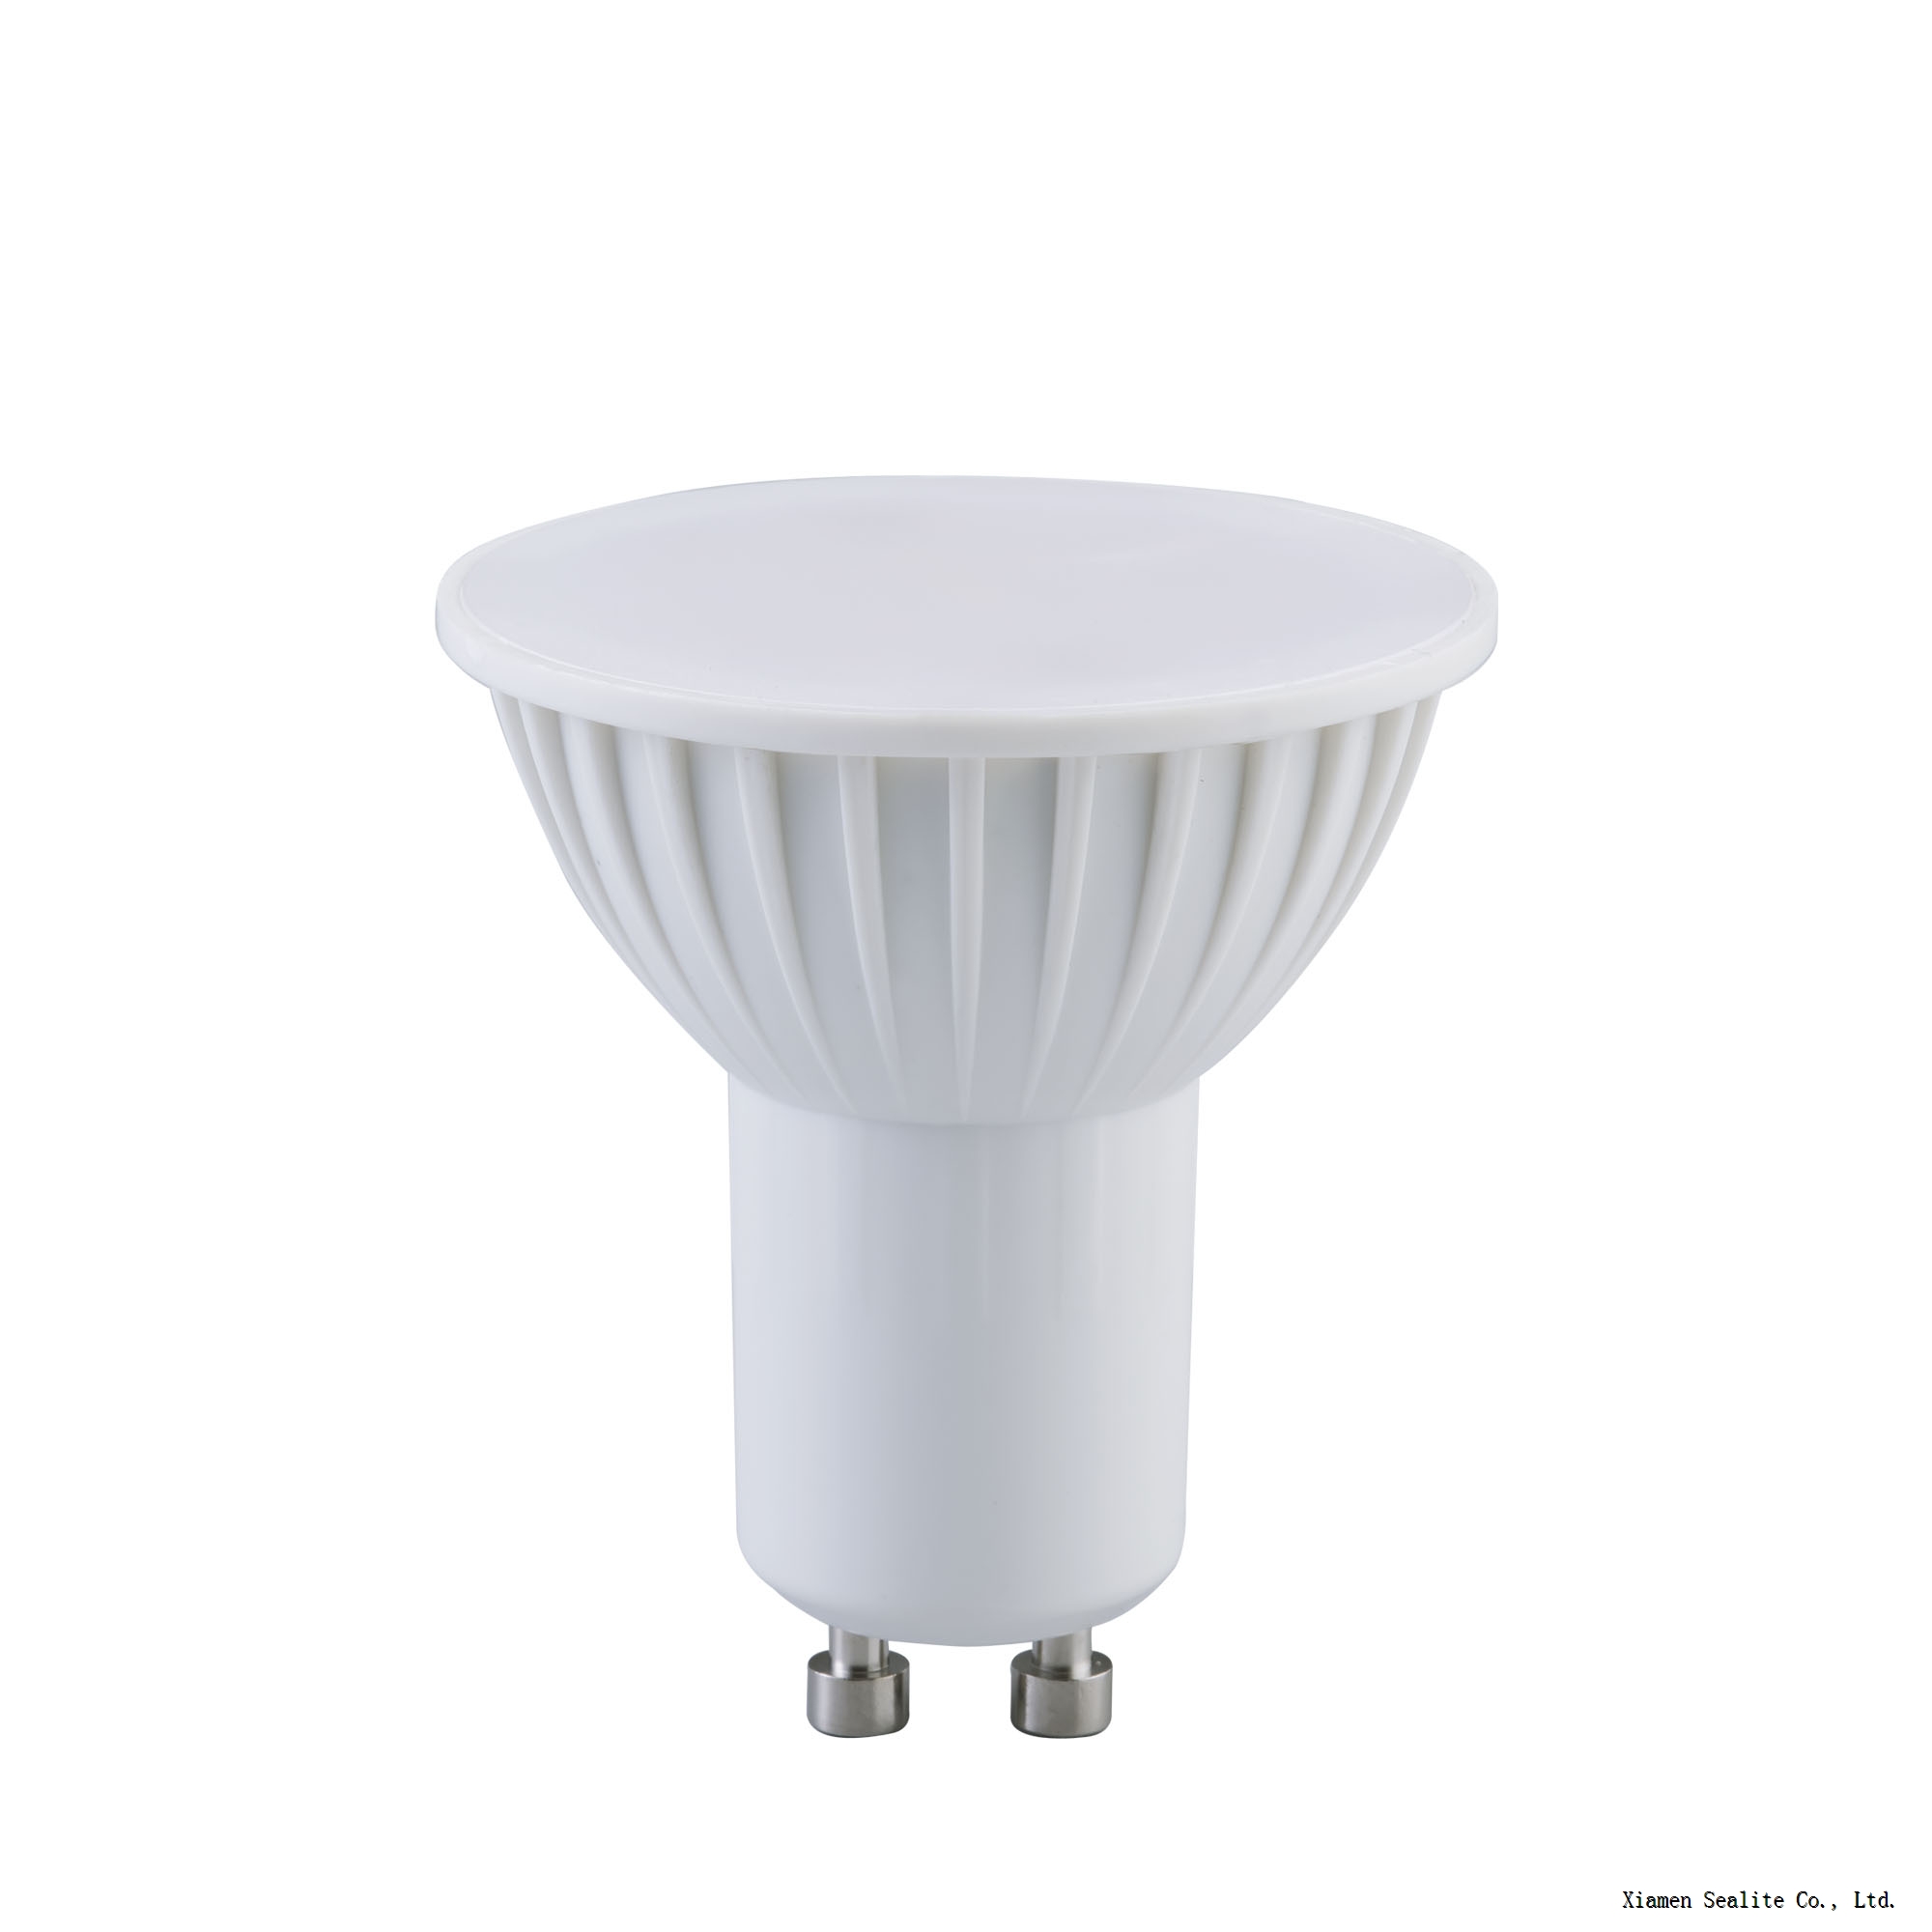 NEWWISH LED Spotlight MR16 5W Bulb with GU5.3 / GU10